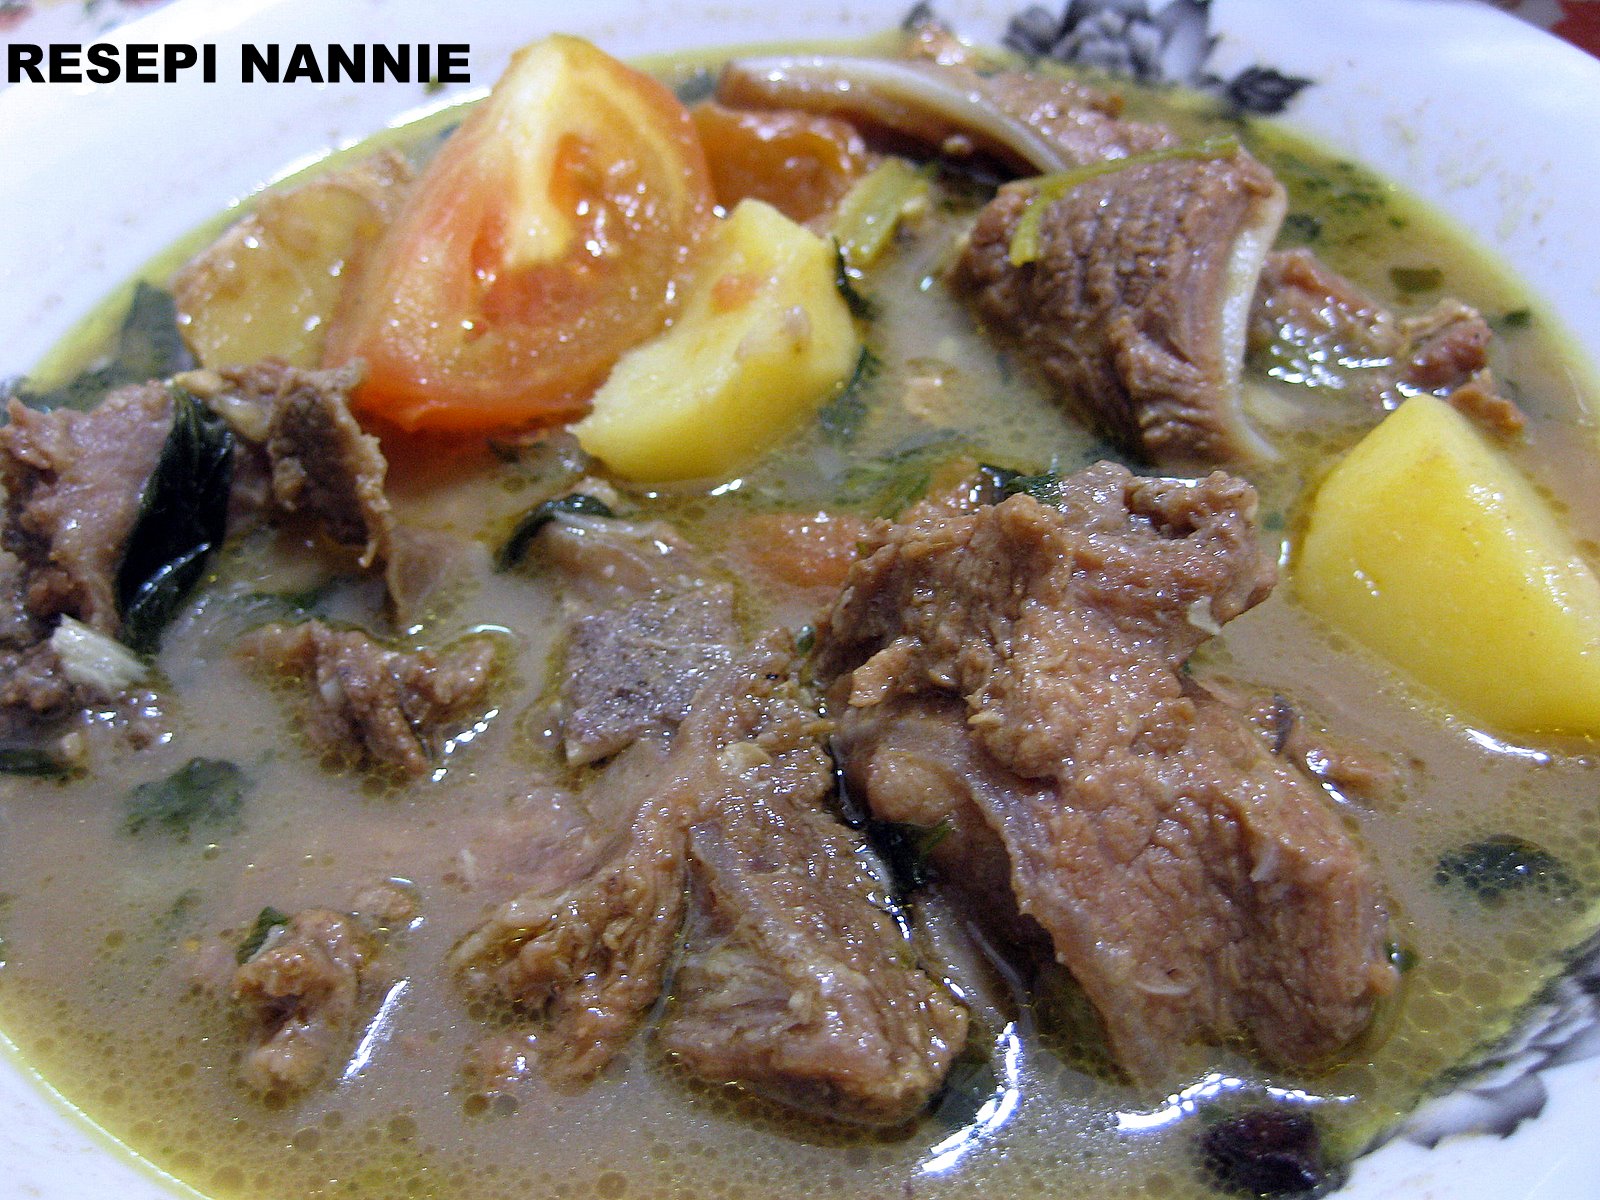 RESEPI NANNIE: Sup daging Siam